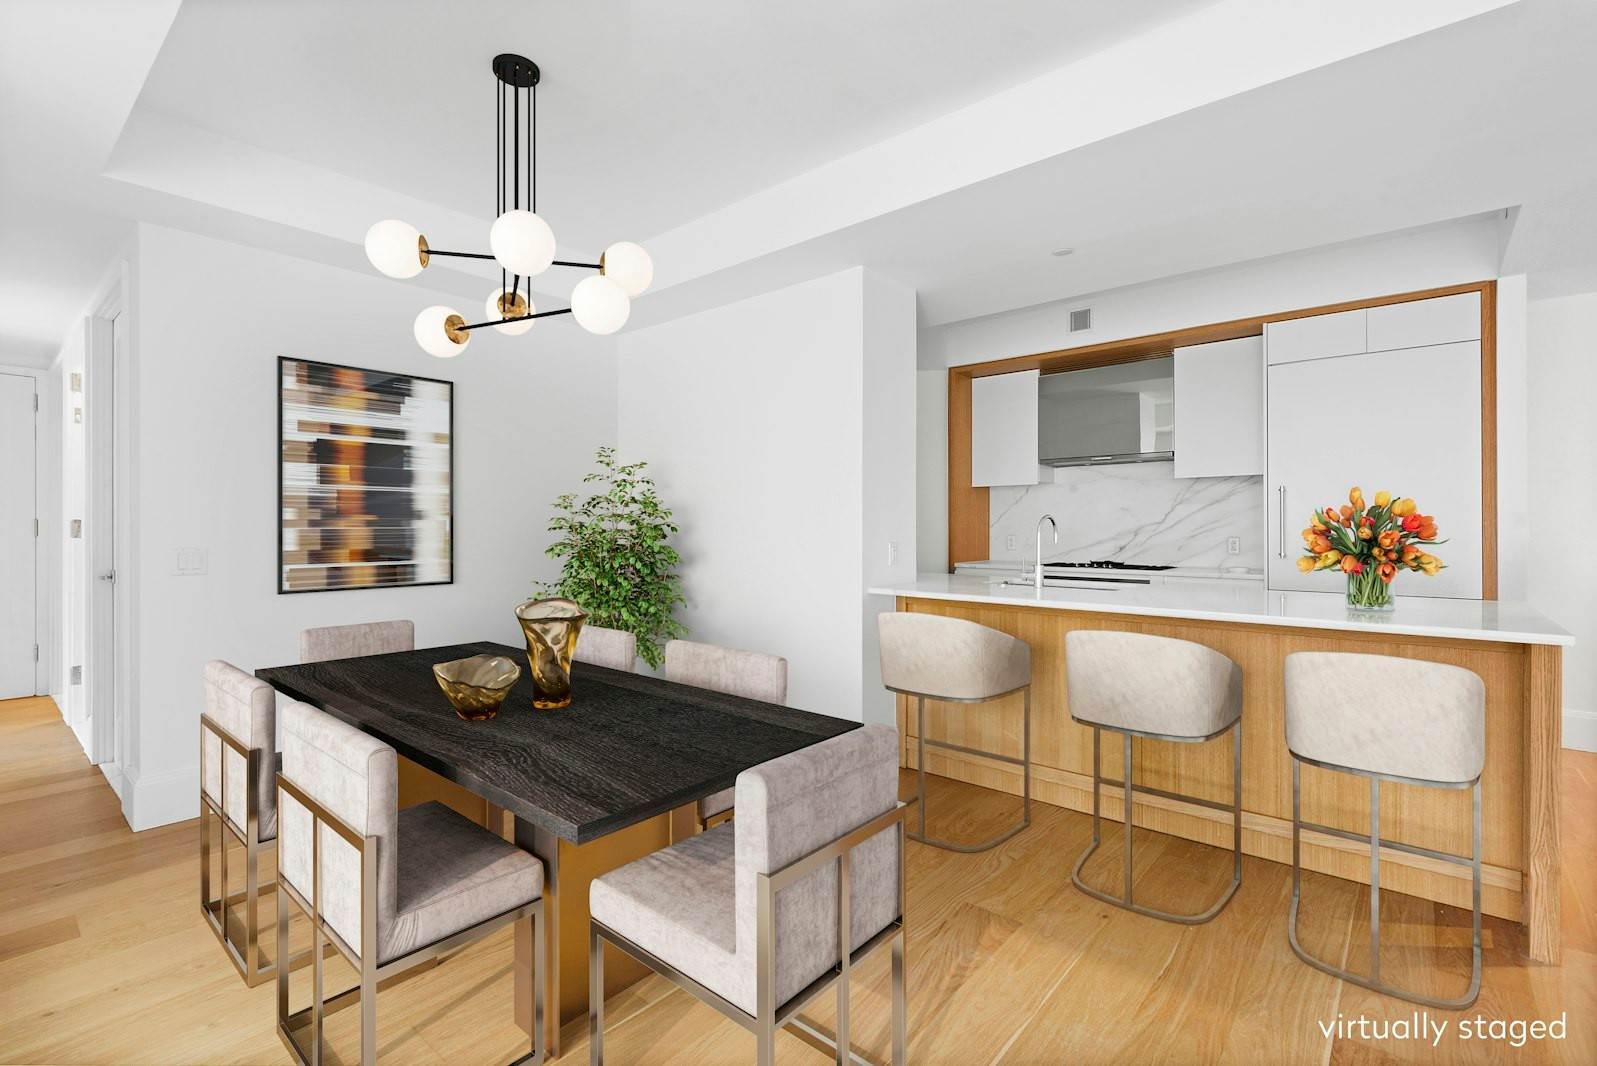 Condominium for Sale at Kip's Bay, Manhattan, NY 10016